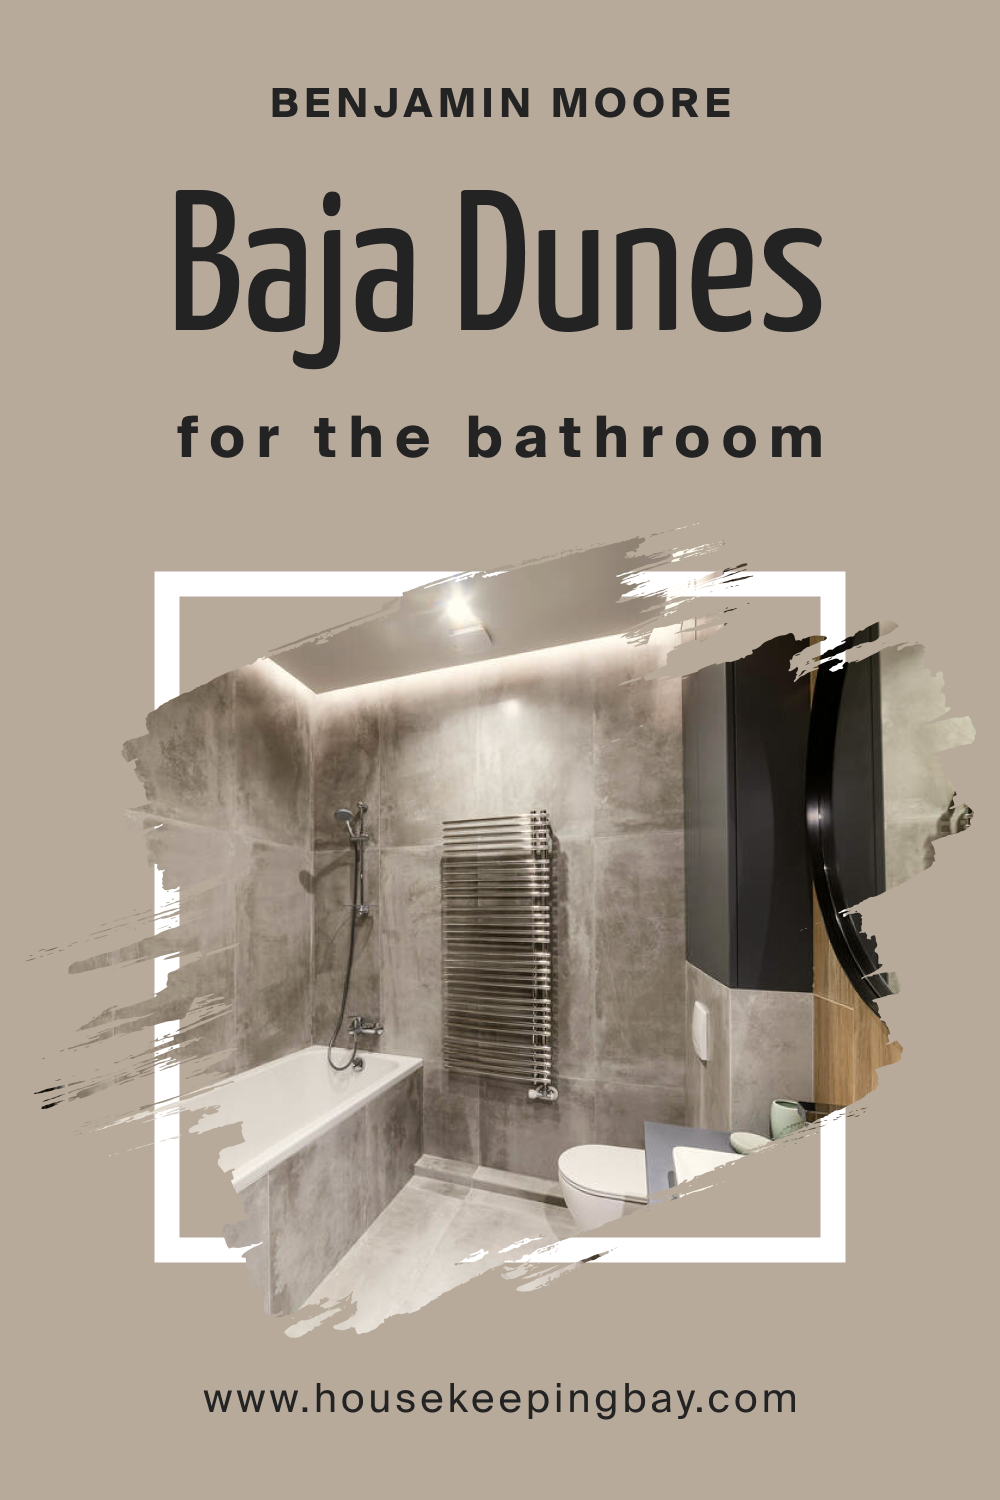 Benjamin Moore. BM Baja Dunes 997 in the Bathroom